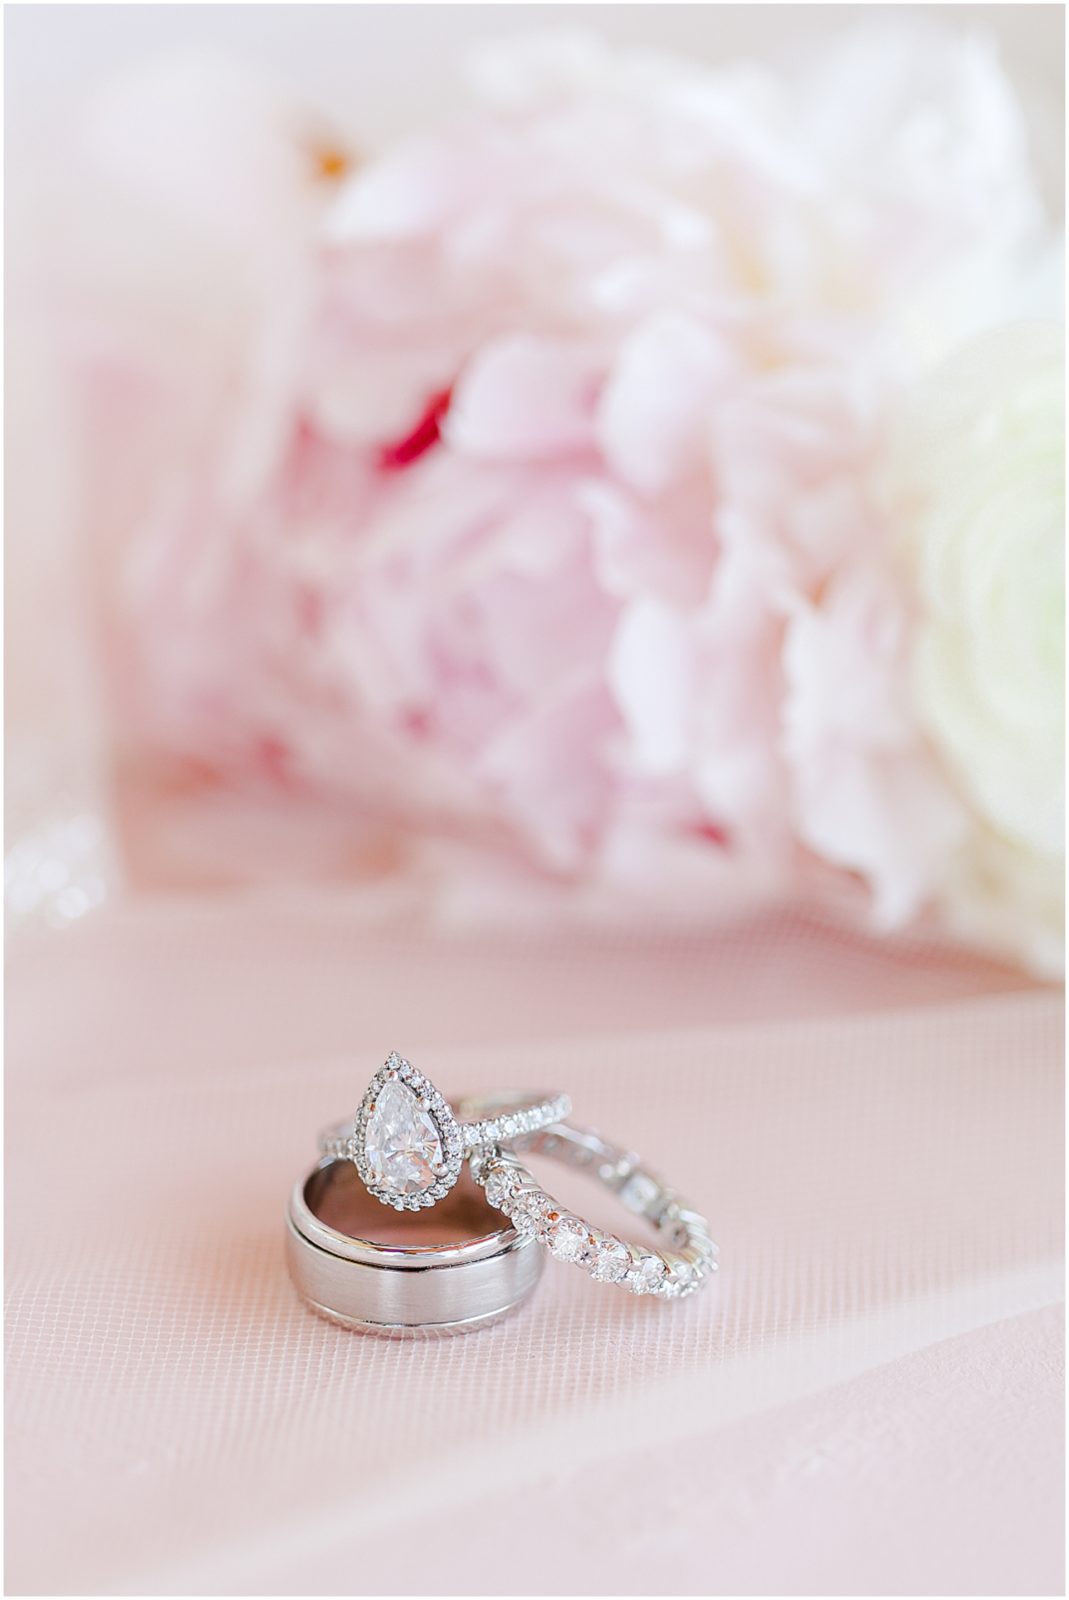 Lake Mozingo Wedding - Kansas City Wedding Photographer - Wedding Details - wedding rings 